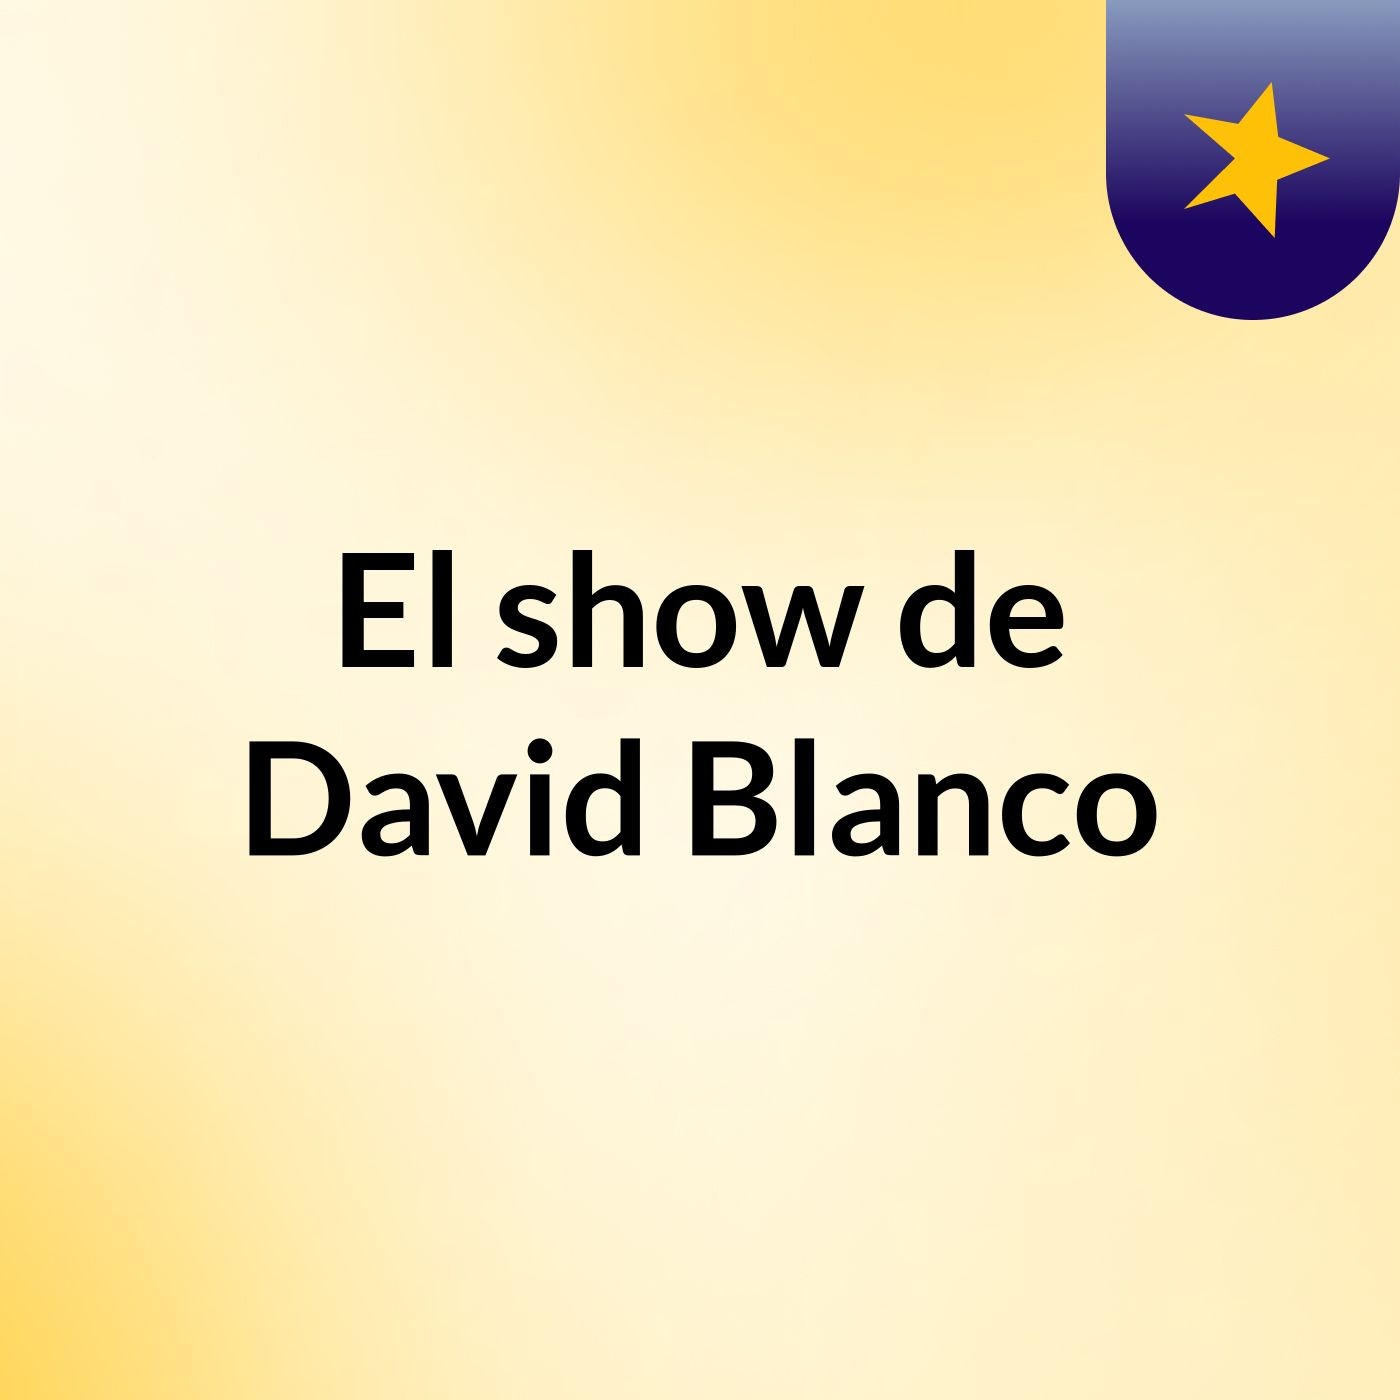 El show de David Blanco